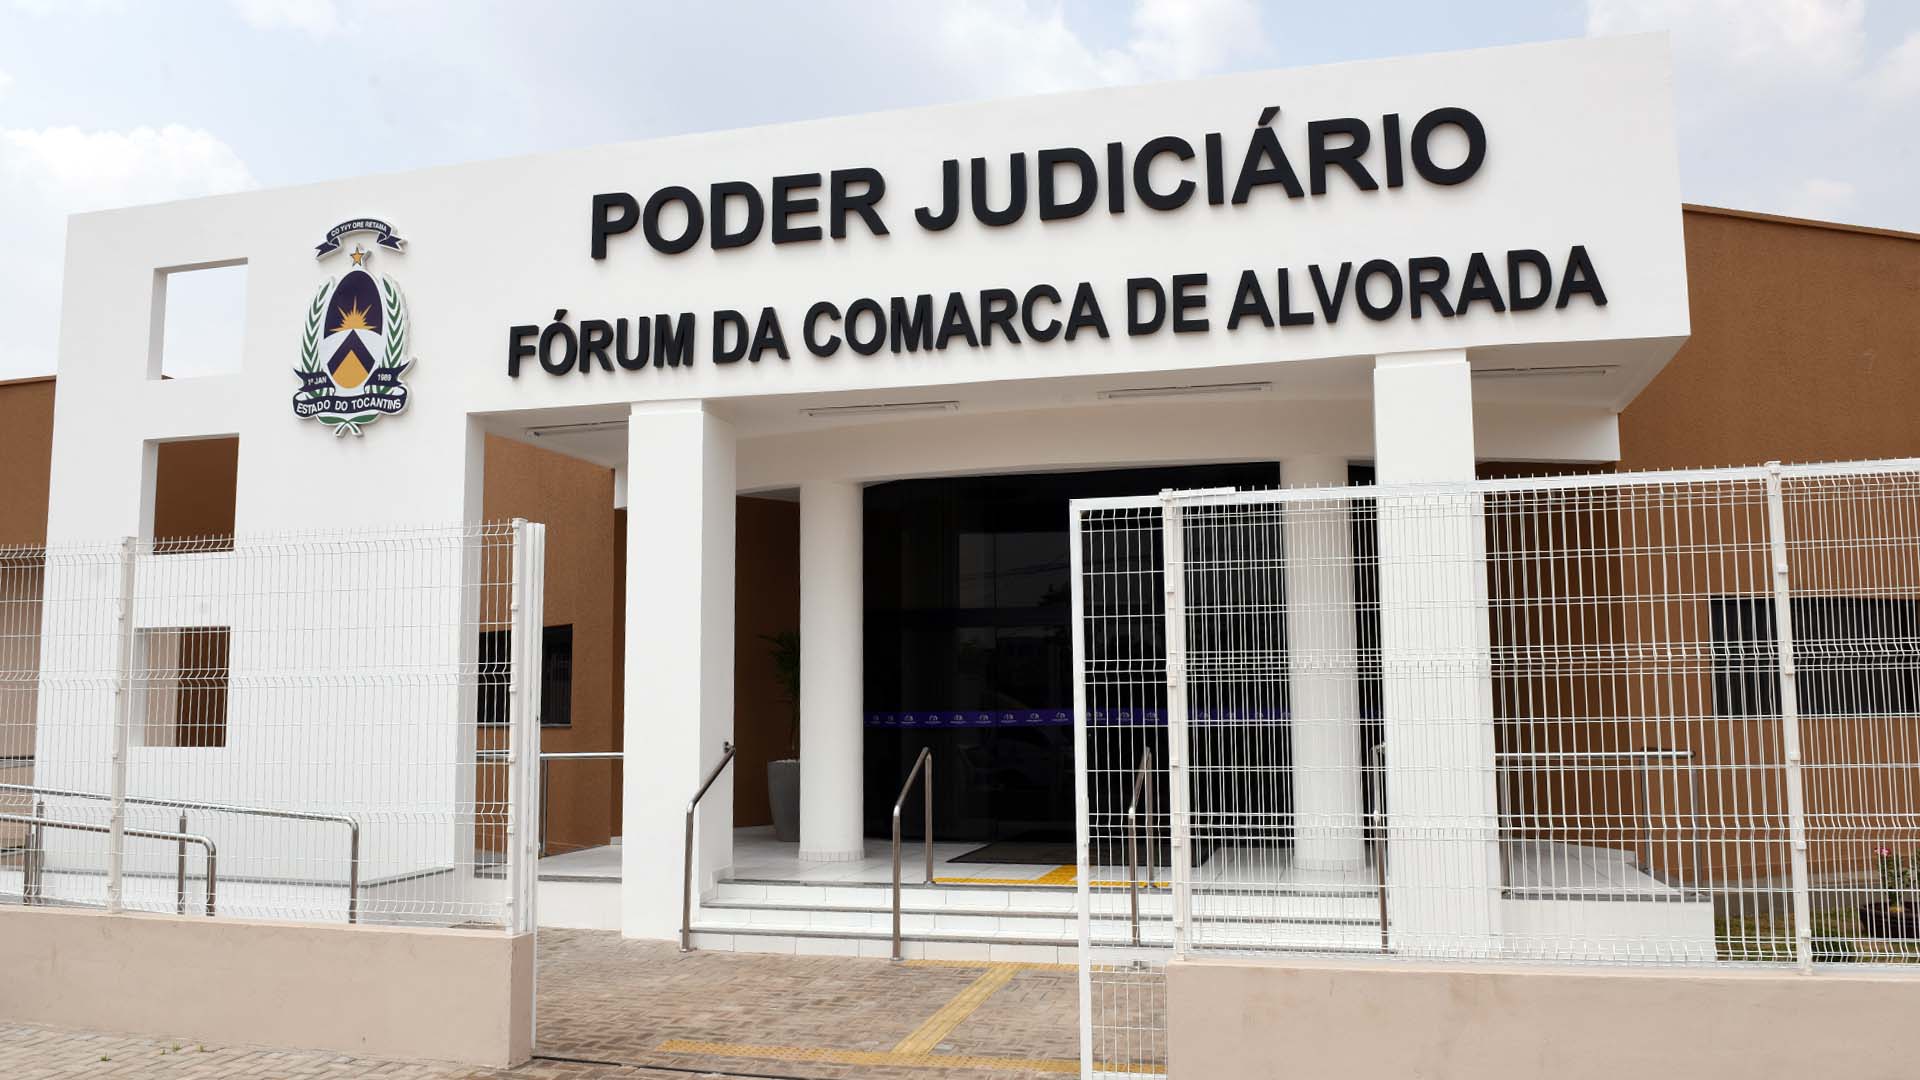 Imagem da fachada do prédio do fórum da comarca de Alvorada, prédio nas cores branca e marrom, com o nome "Poder Judiciário", Fórum da Comarca de Alvorada